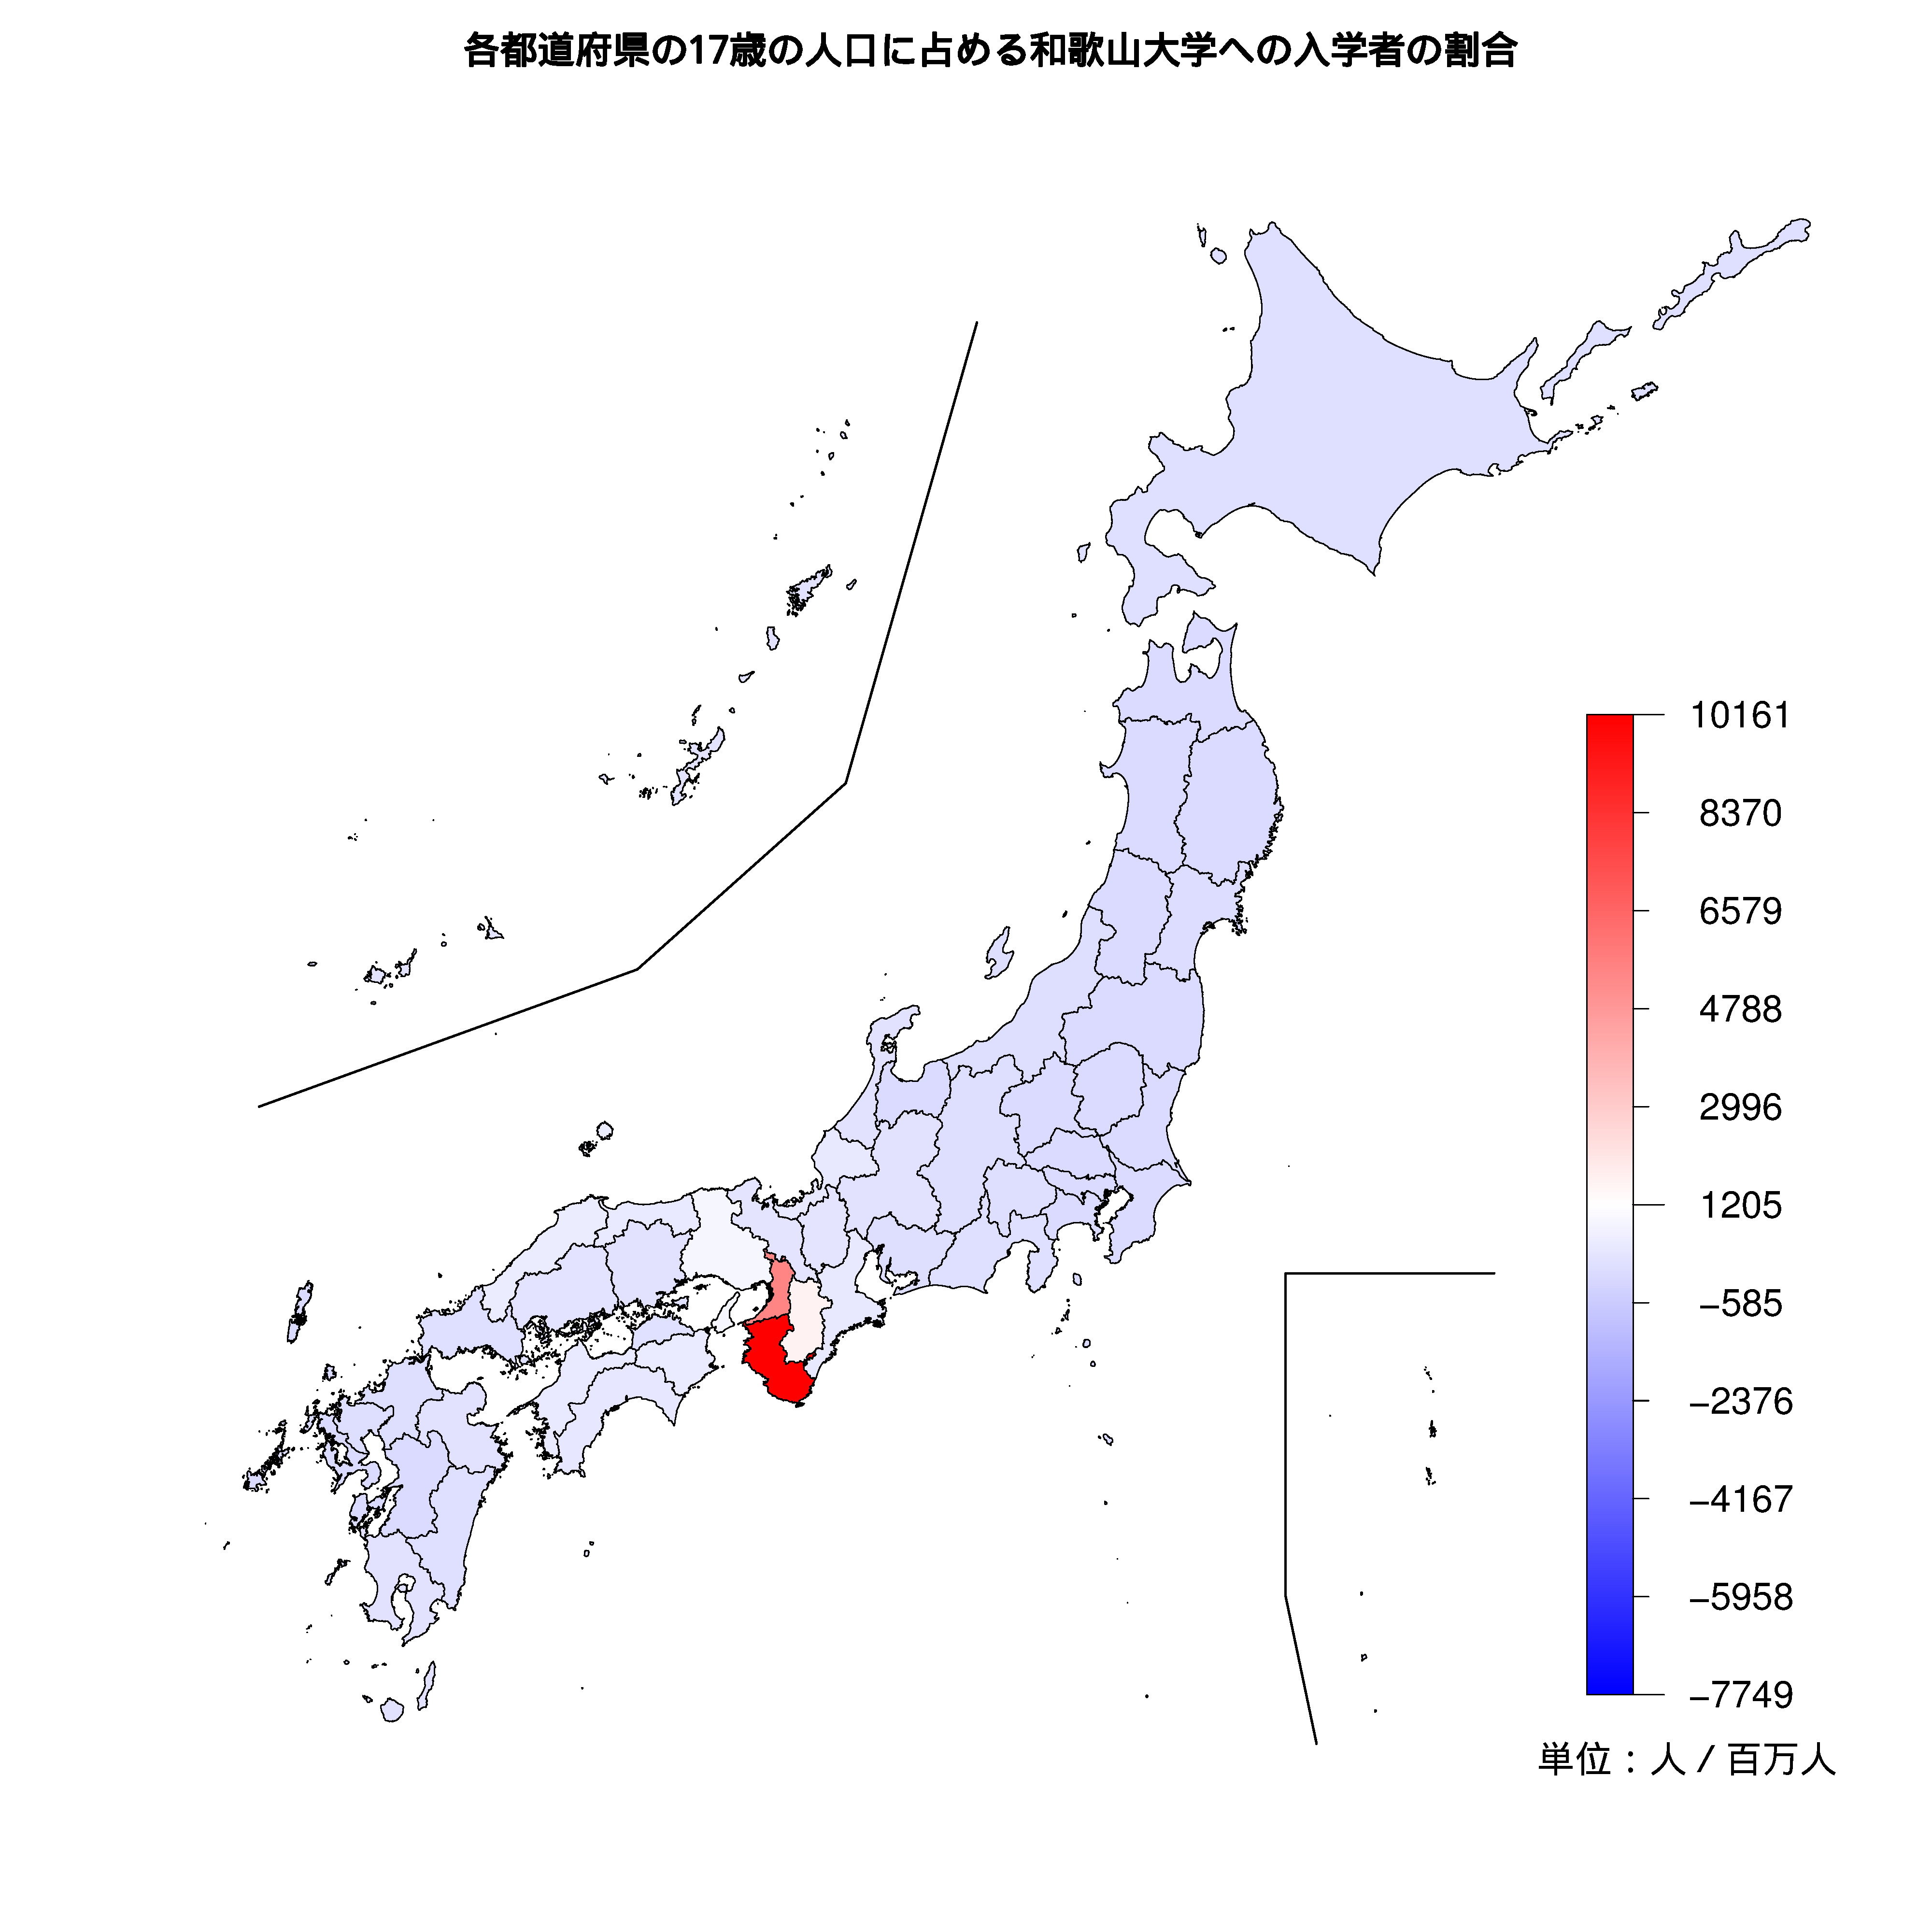 和歌山大学への入学者が多い都道府県の色分け地図